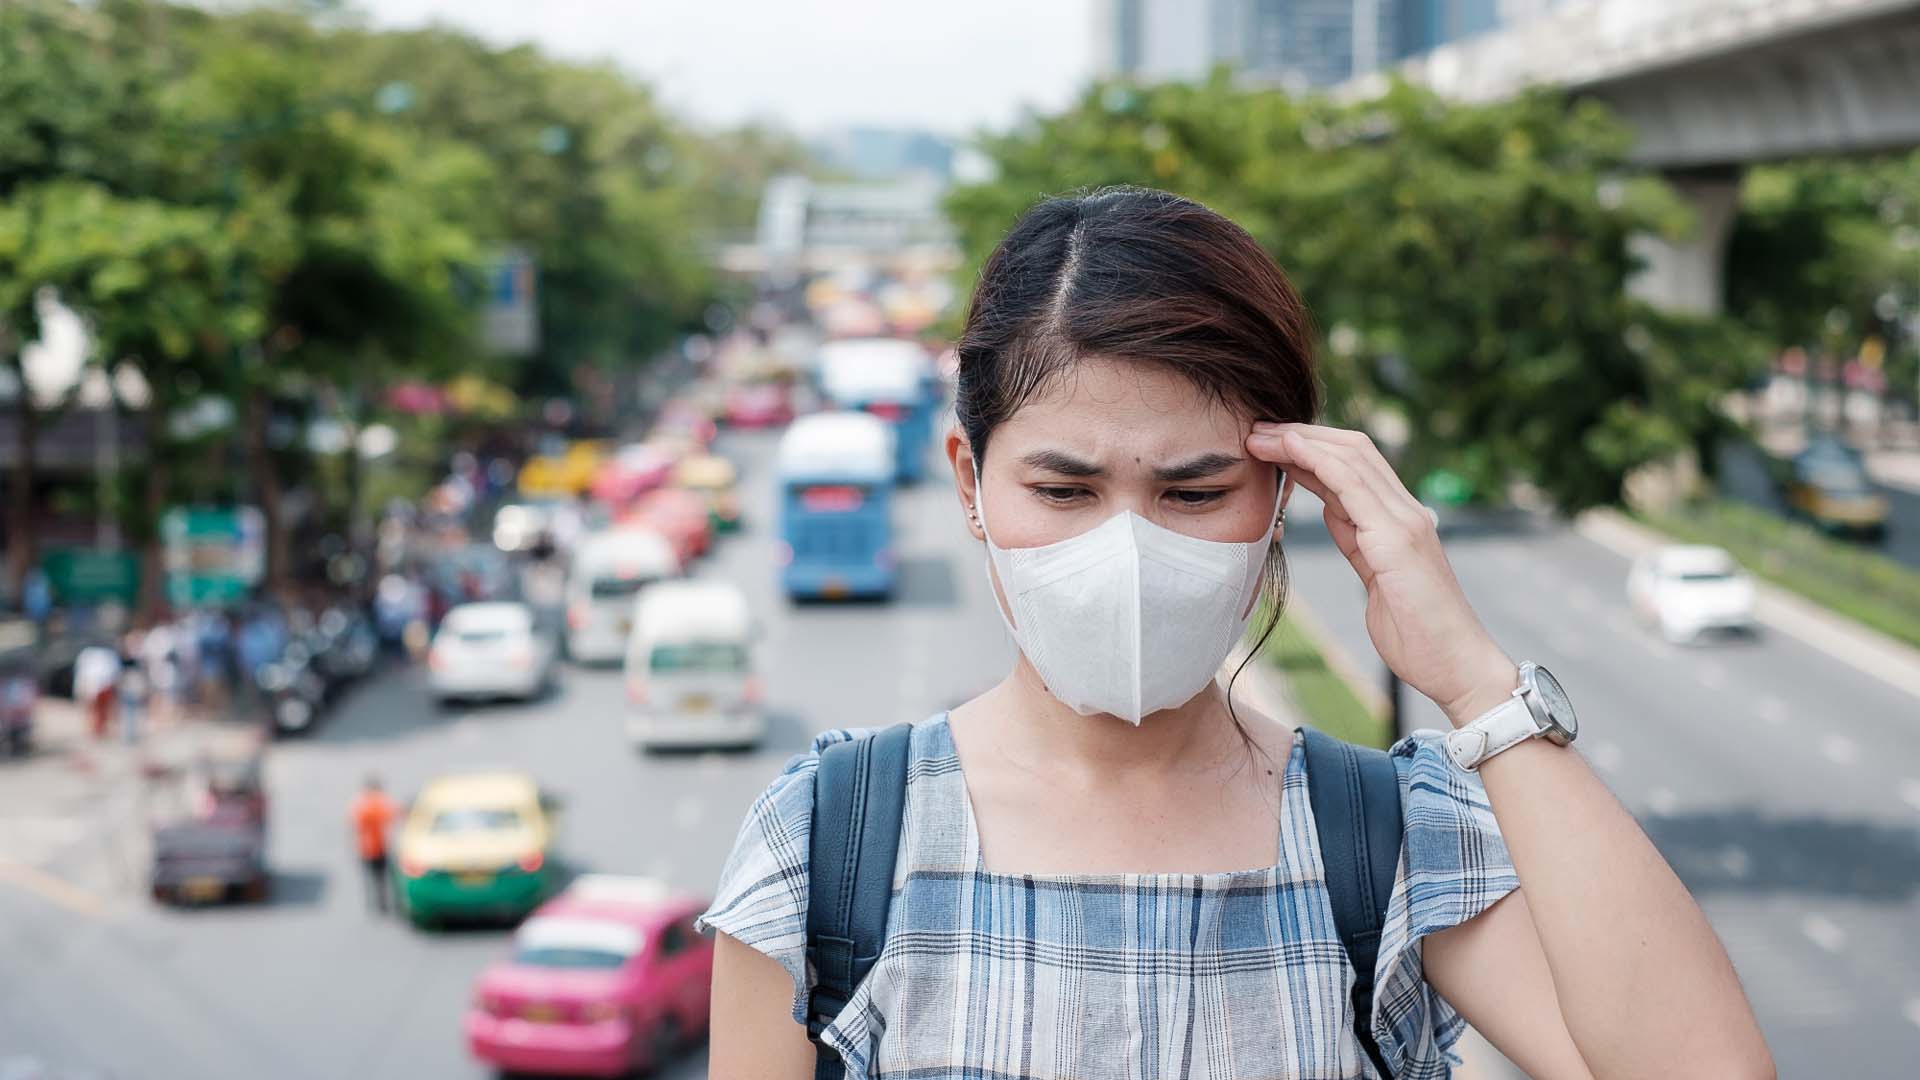 Bahaya Polusi Udara untuk Kesehatan! Berikut Cara Menjaga Kulit Wajah Agar Tetap Sehat di Tengah Polusi Udara